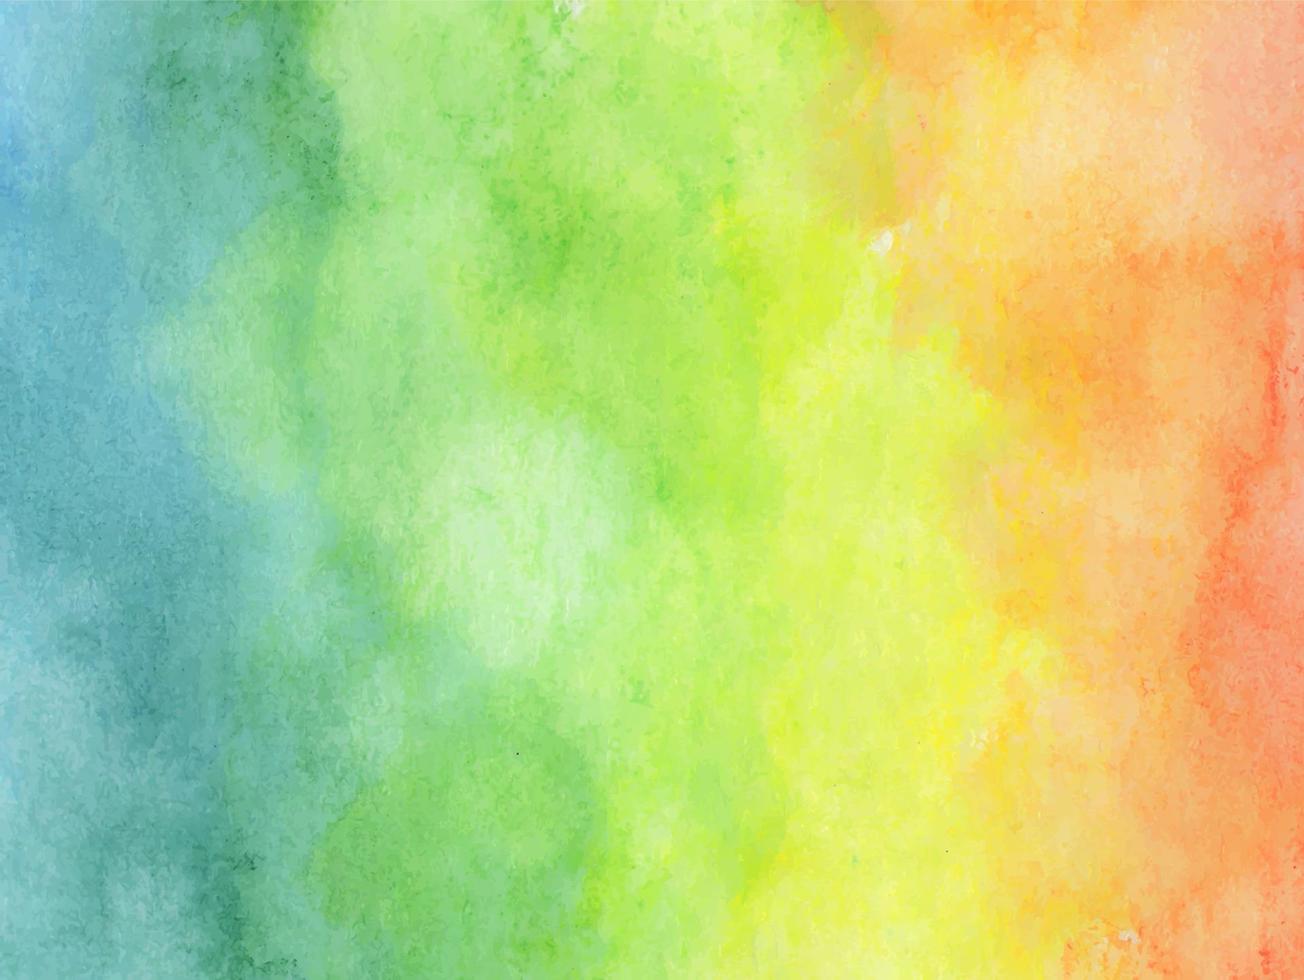 sfondo acquerello colorato arcobaleno - trama astratta. vettore